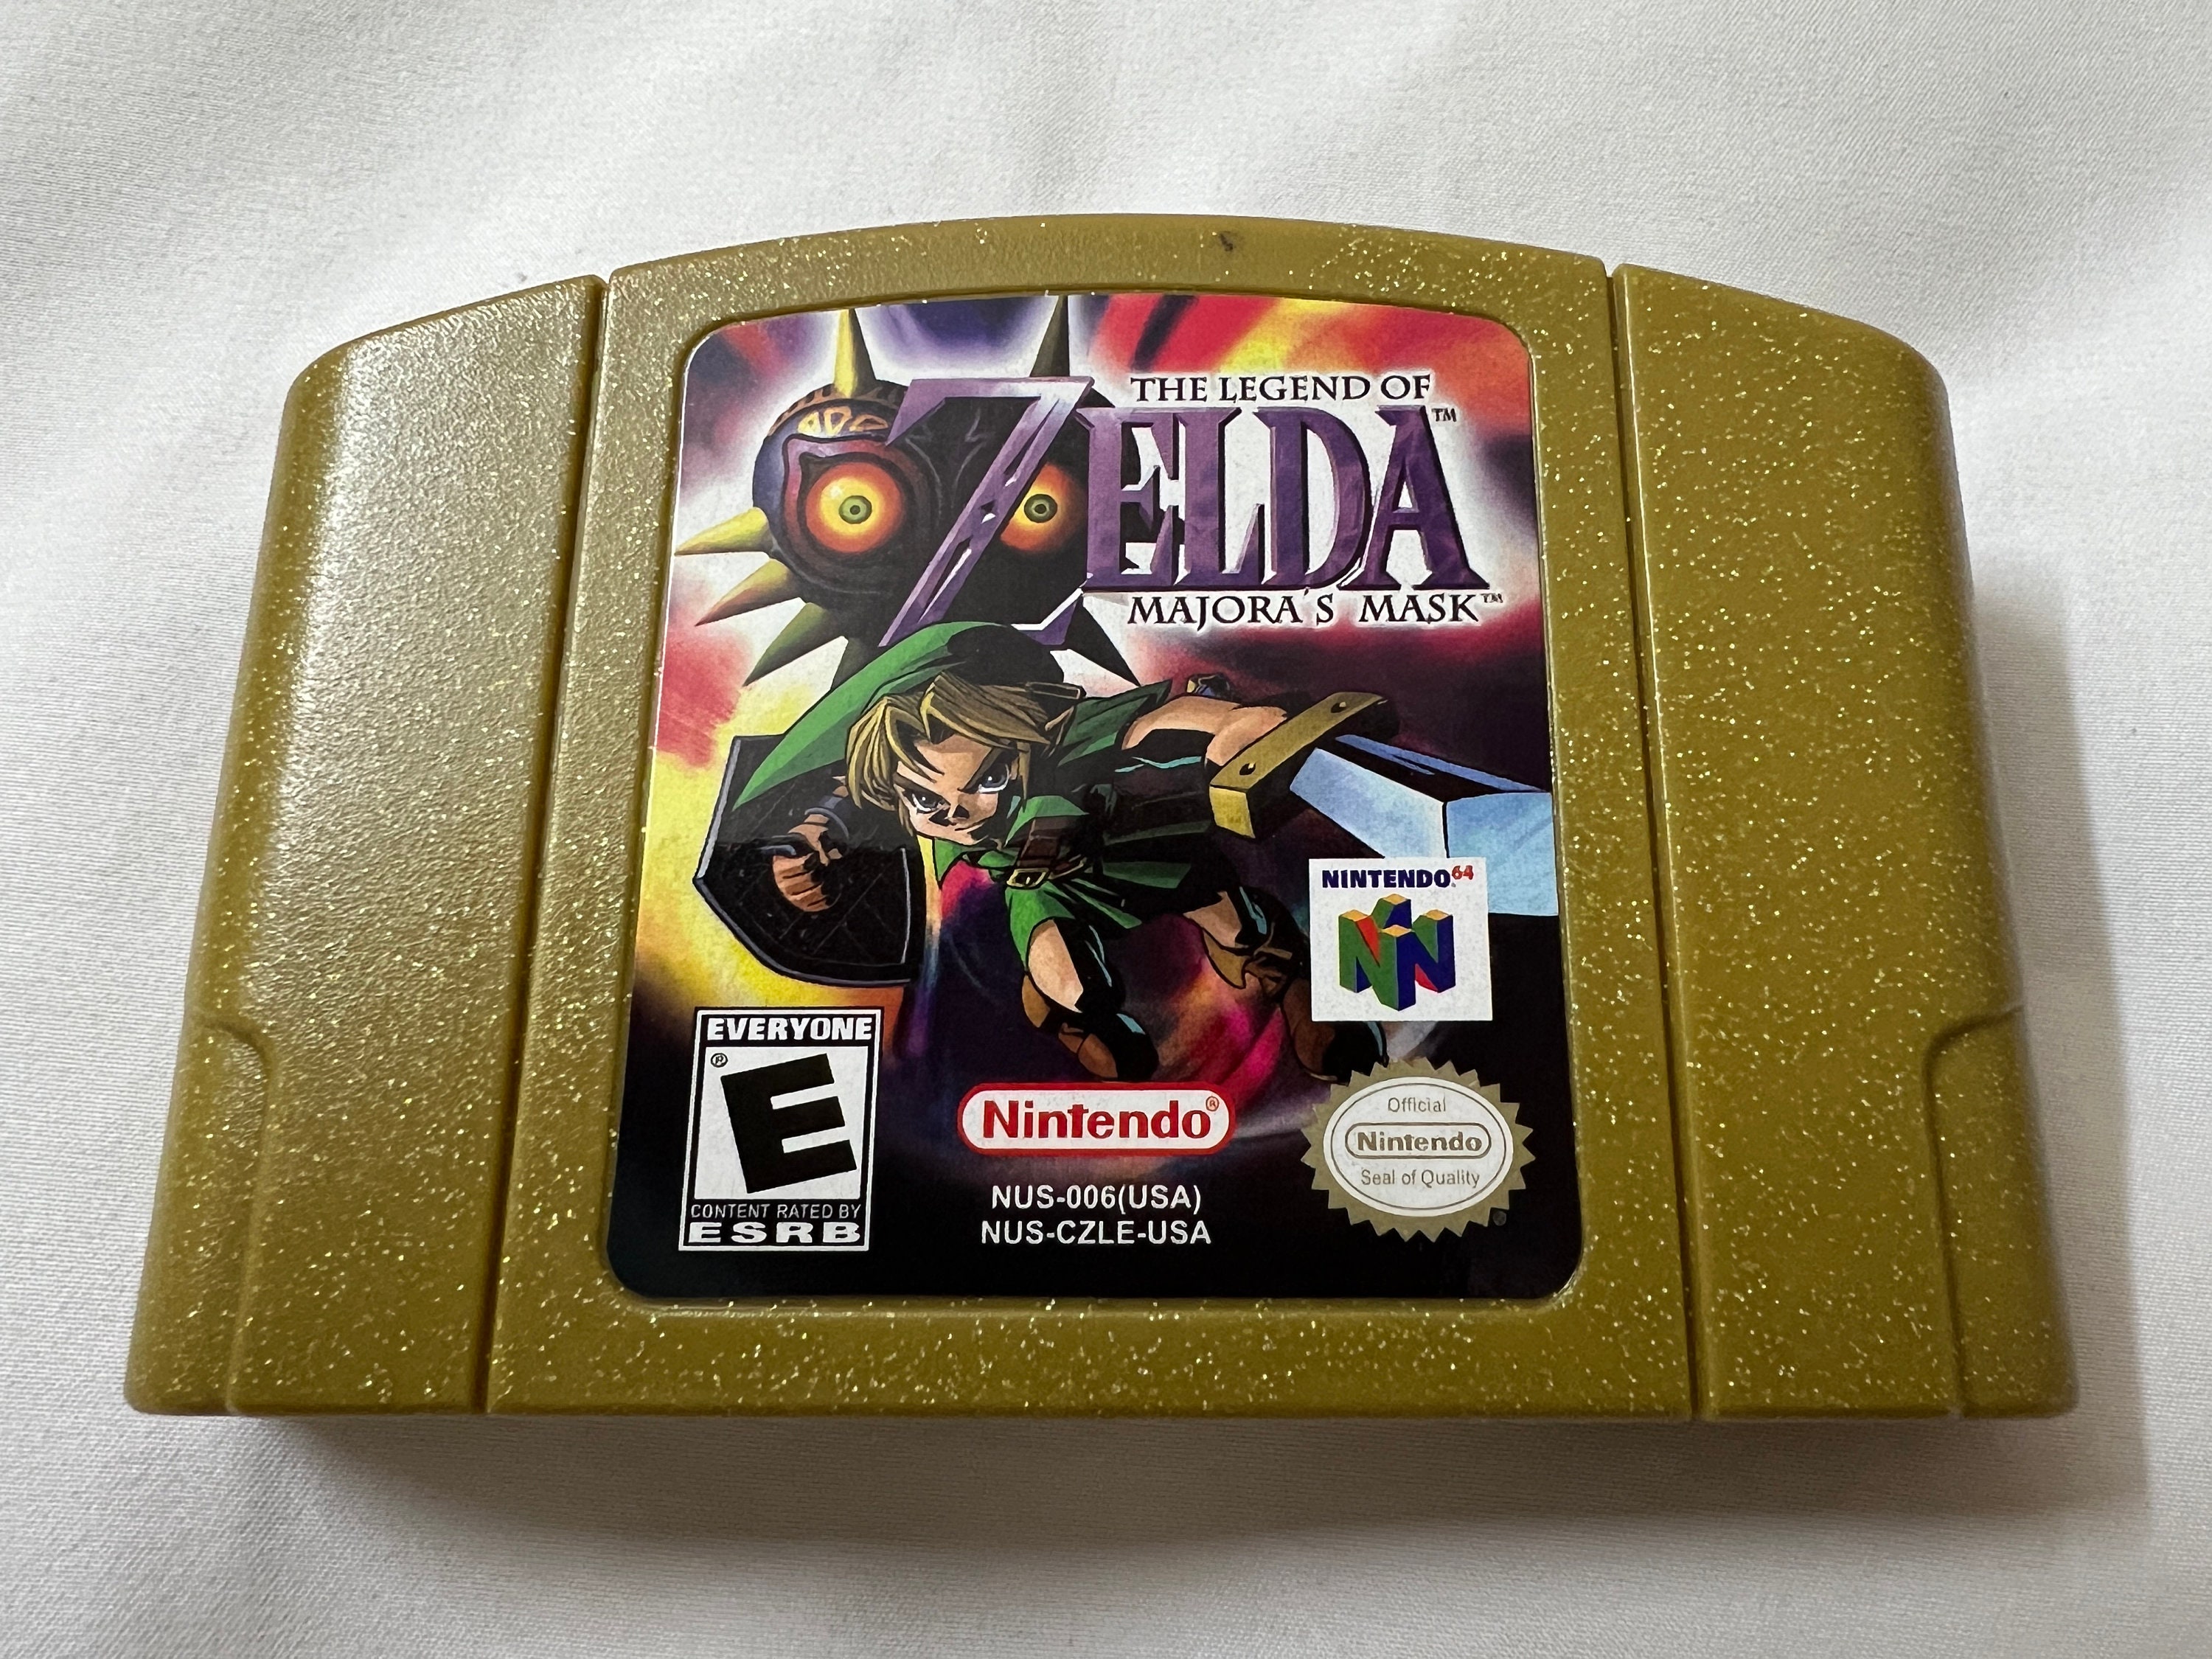 The Legend of Zelda: Majora's Mask - Nintendo 64, Nintendo 64